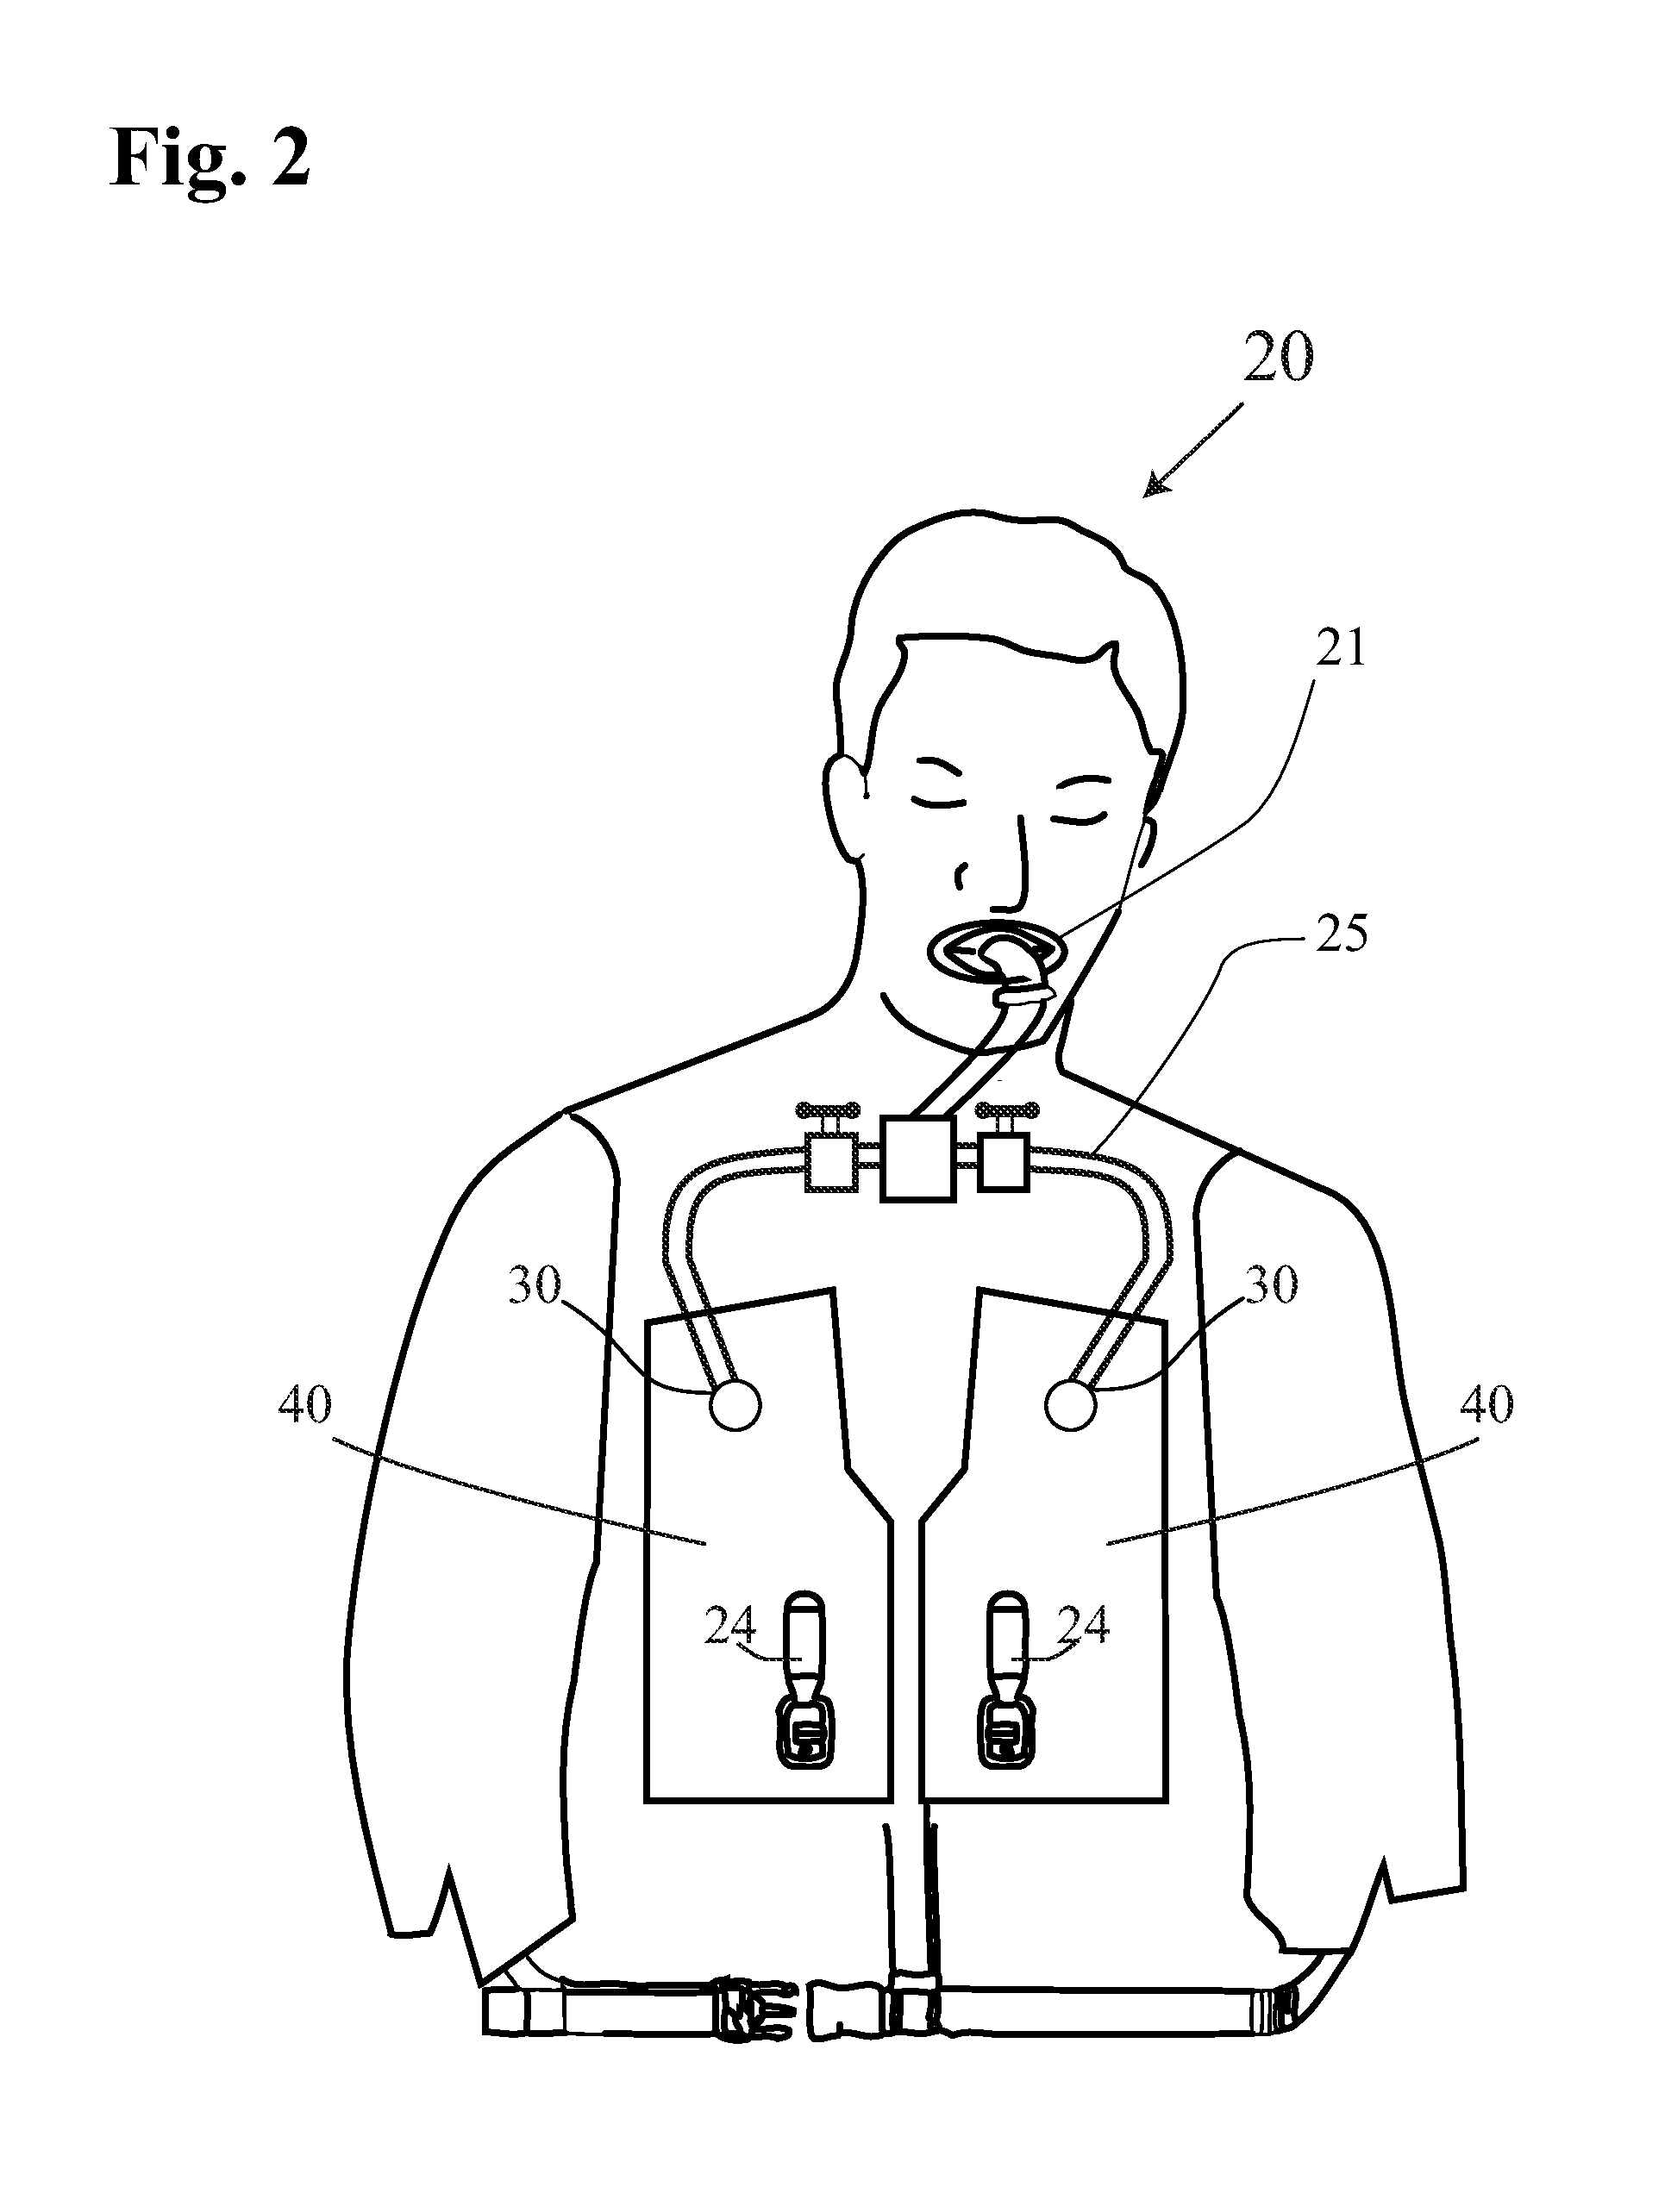 Safety vest floatation system with oxygen supply